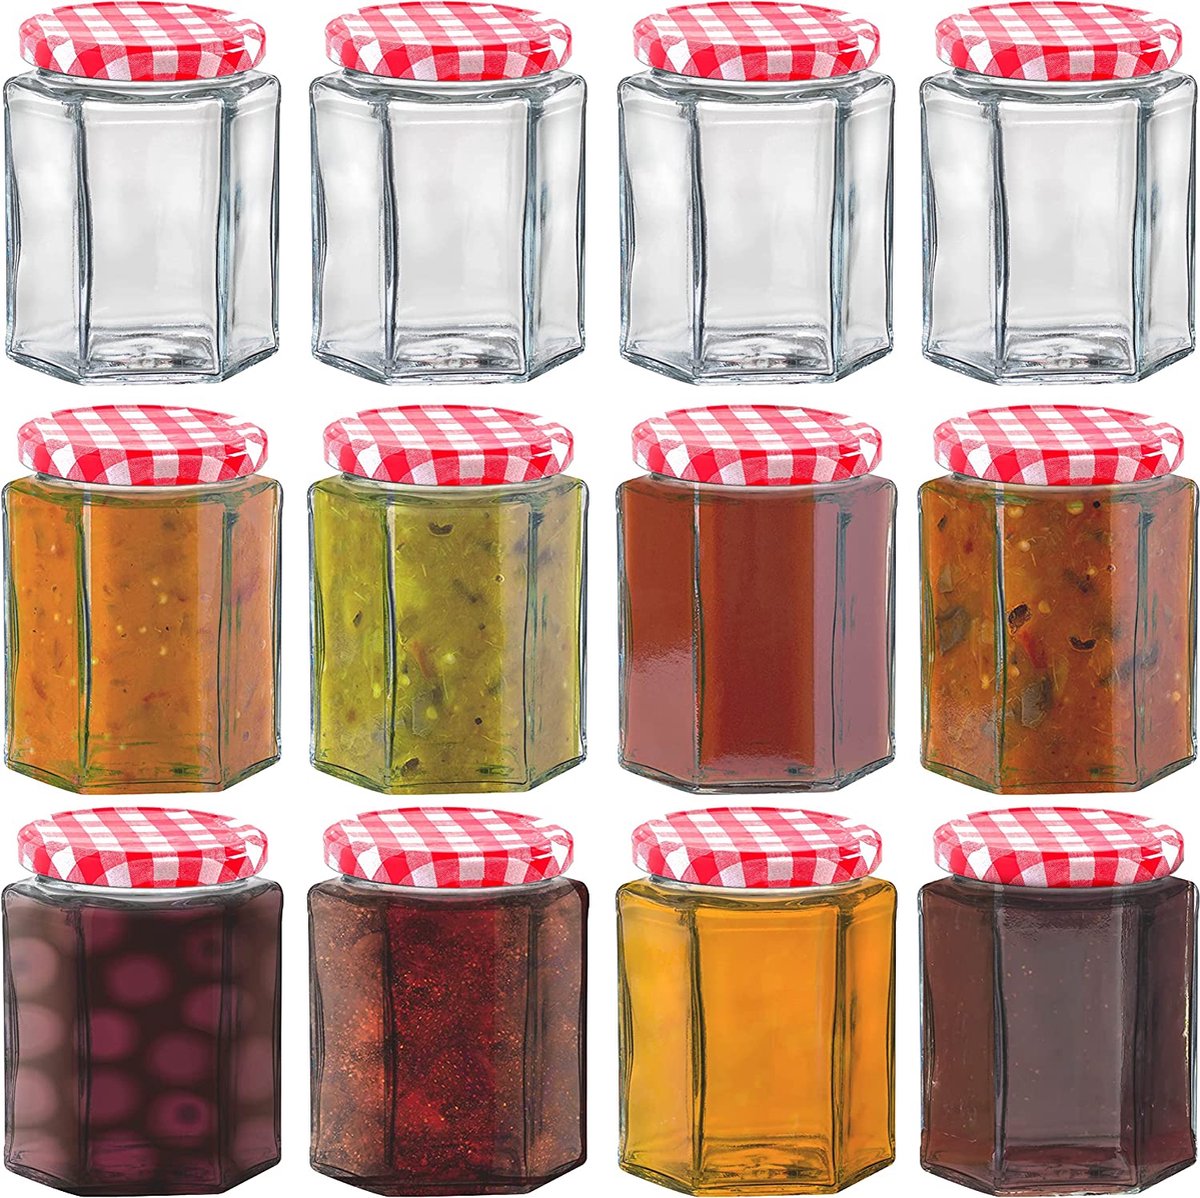 HEFTMAN Kleine glazen potten met deksels - 12 stuks luchtdichte 250 ml jampotten met rode gingham-deksels voor gebruik als beitskruiken, glazen potten voor het maken van kaarsen, conserveren van potten en meer - zeshoekige kleine potten (leeg)